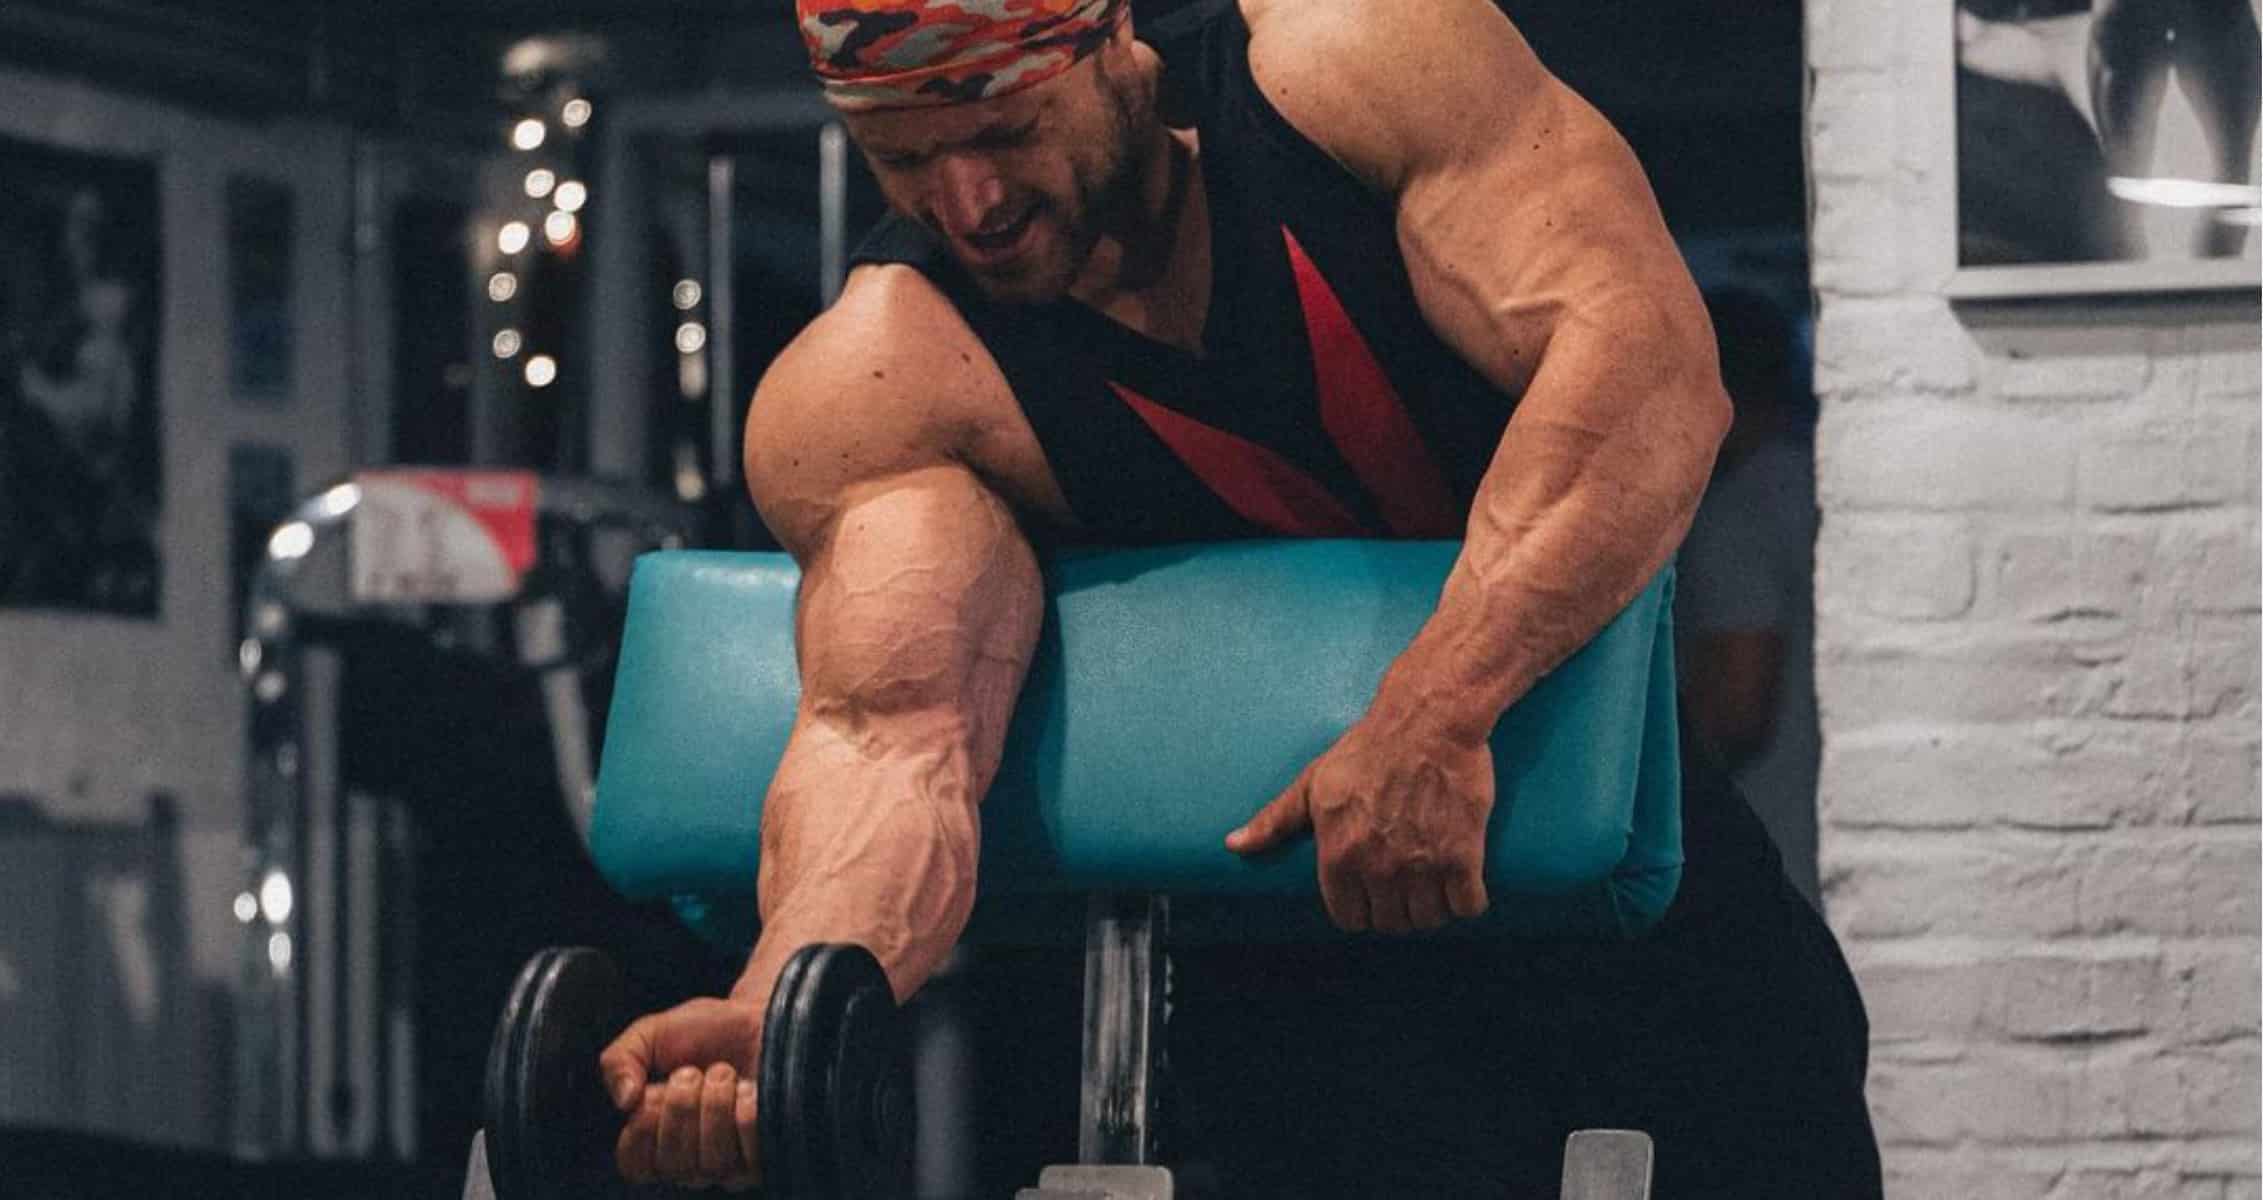 Bodybuilder Urs Kalecinski Does a Brutal Shoulder and Arm Workout